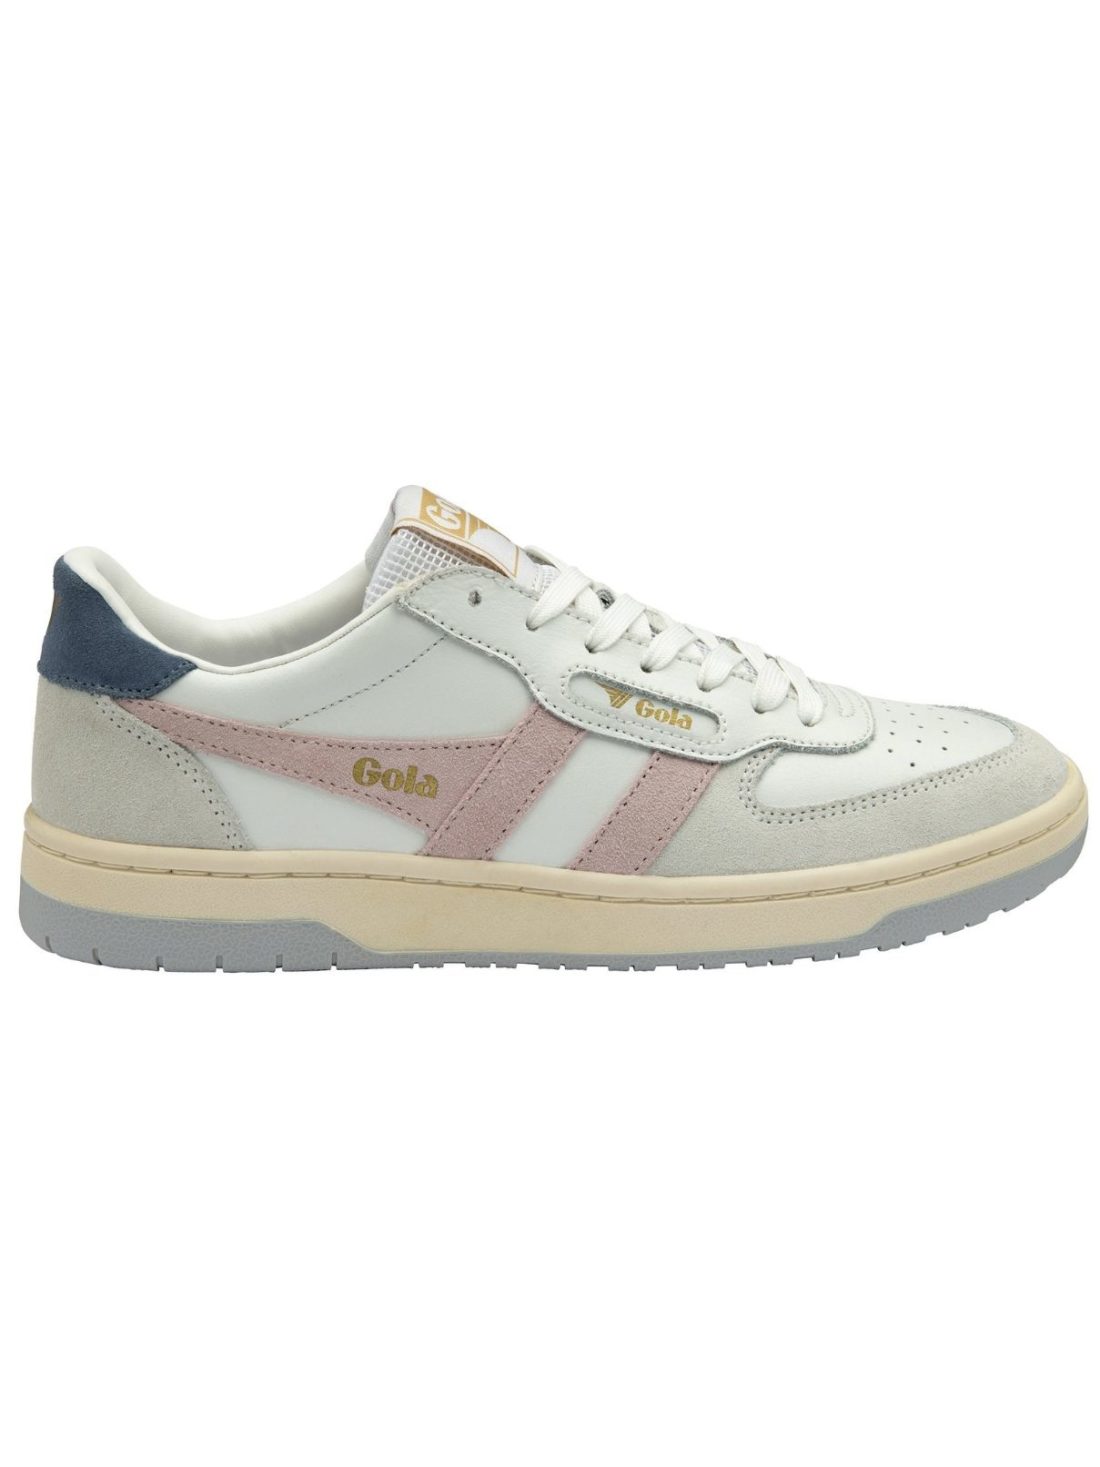 gola hawk sneakers in white/chalk pink/moonlight/lt grey